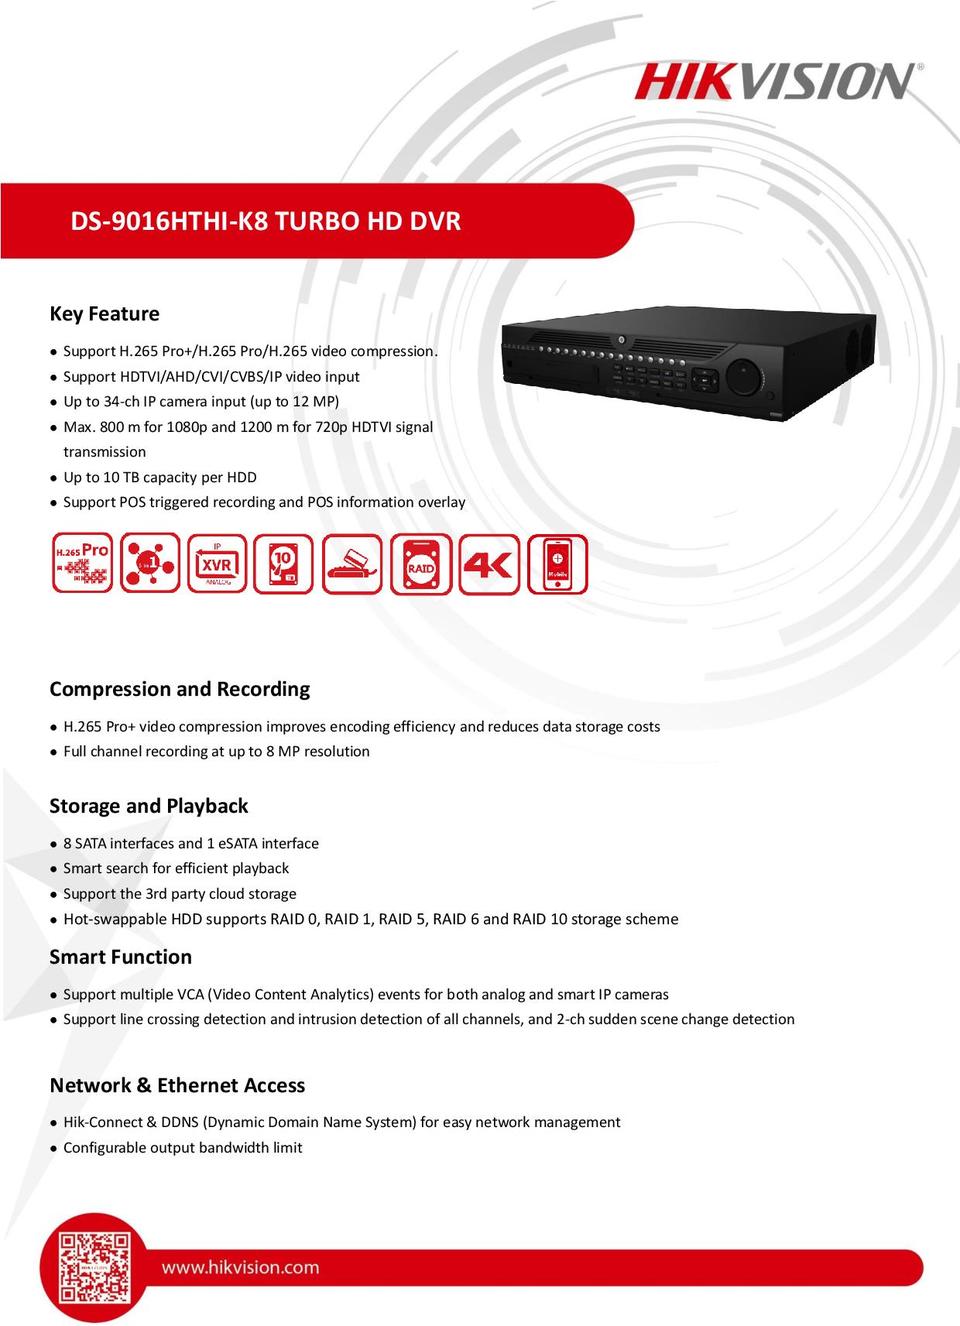 Hikvision DS-9016HTHI-K8 16CH 4K 8MP HD-TVI DVR - Includes 3TB Hard Drive 0